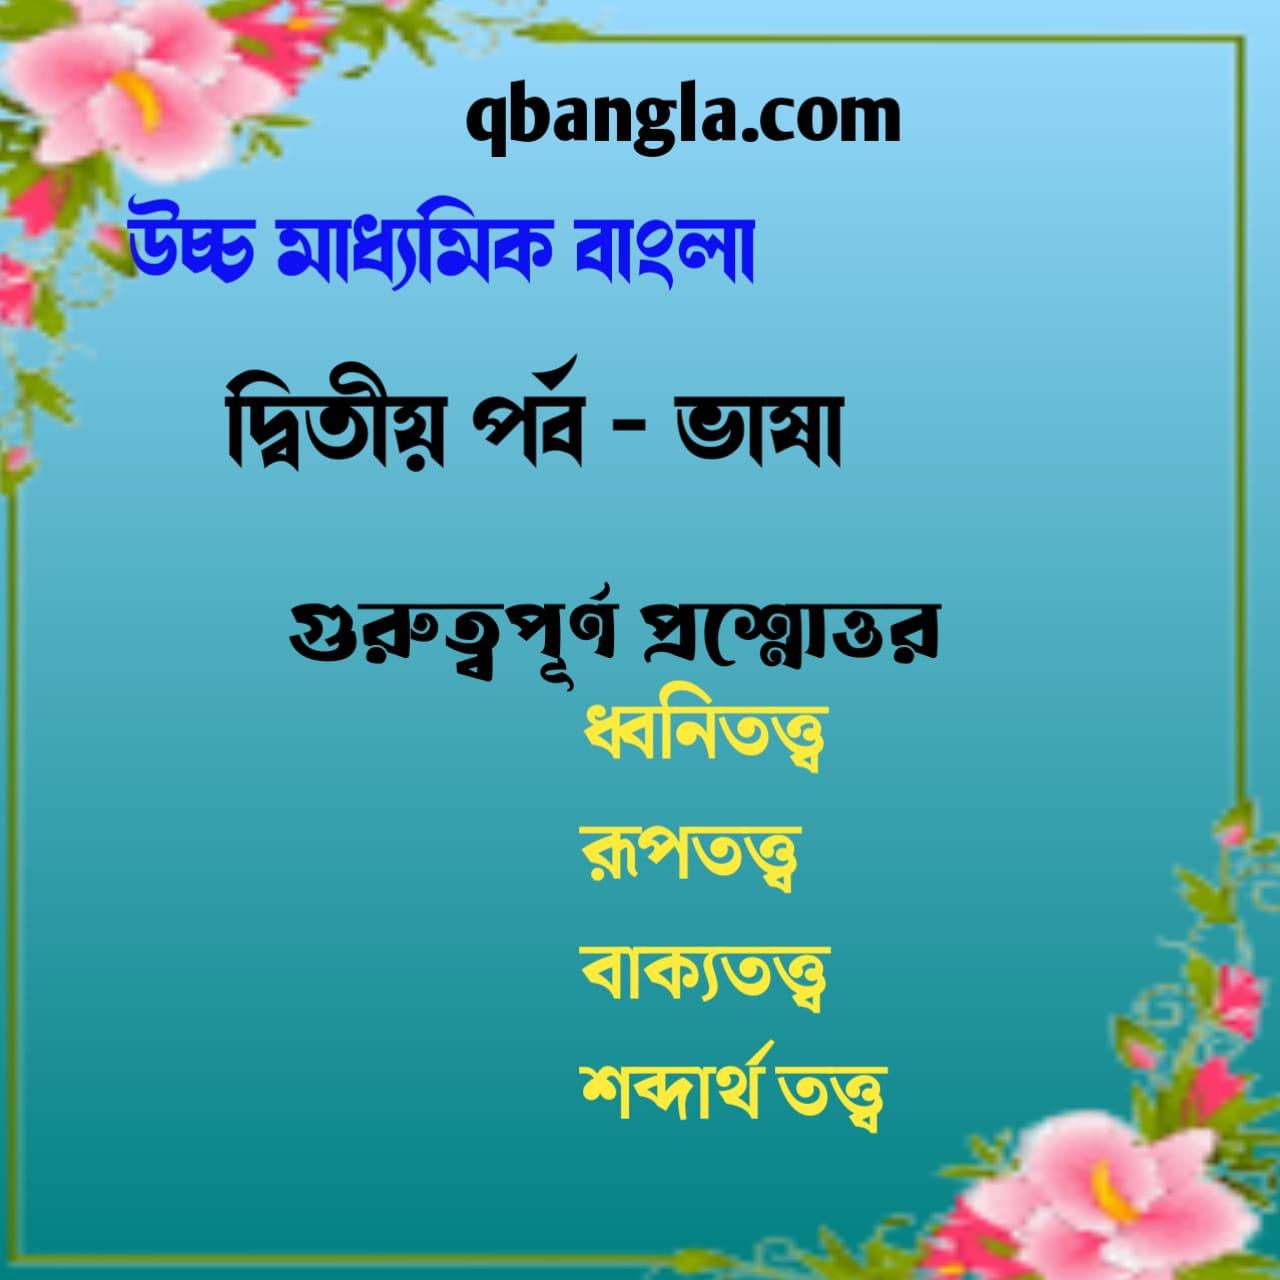 উচ্চ মাধ্যমিক বাংলা ভাষা ও শিল্প সাহিত্য সংস্কৃতি 2023